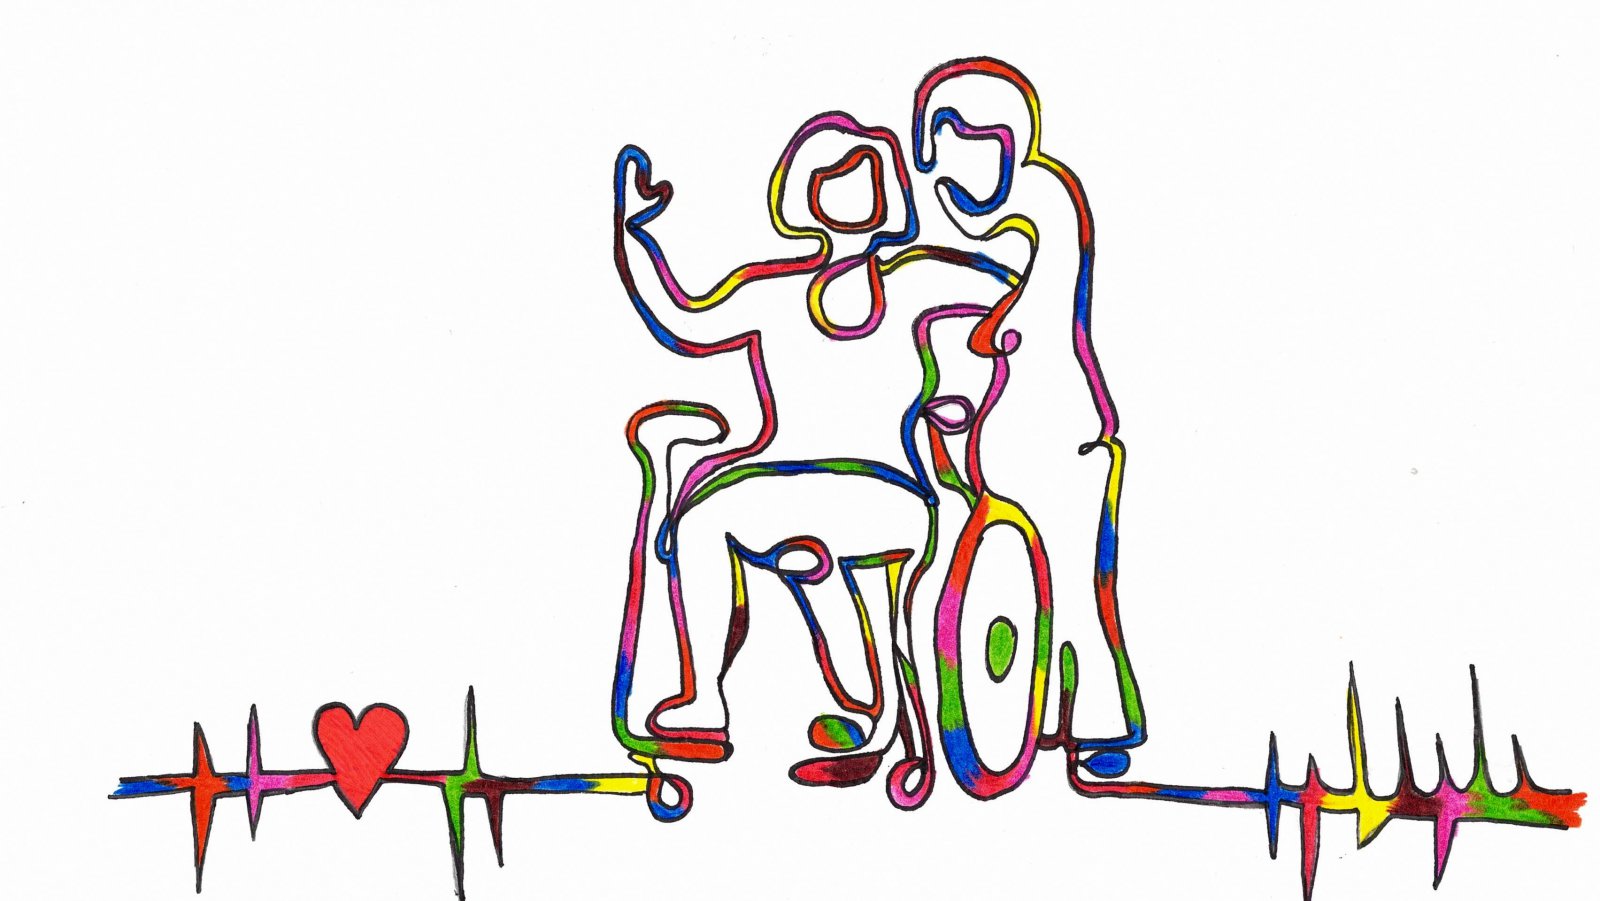 Kolorowy obrys pokazujący osobe na wózku i osobę stojącą obok